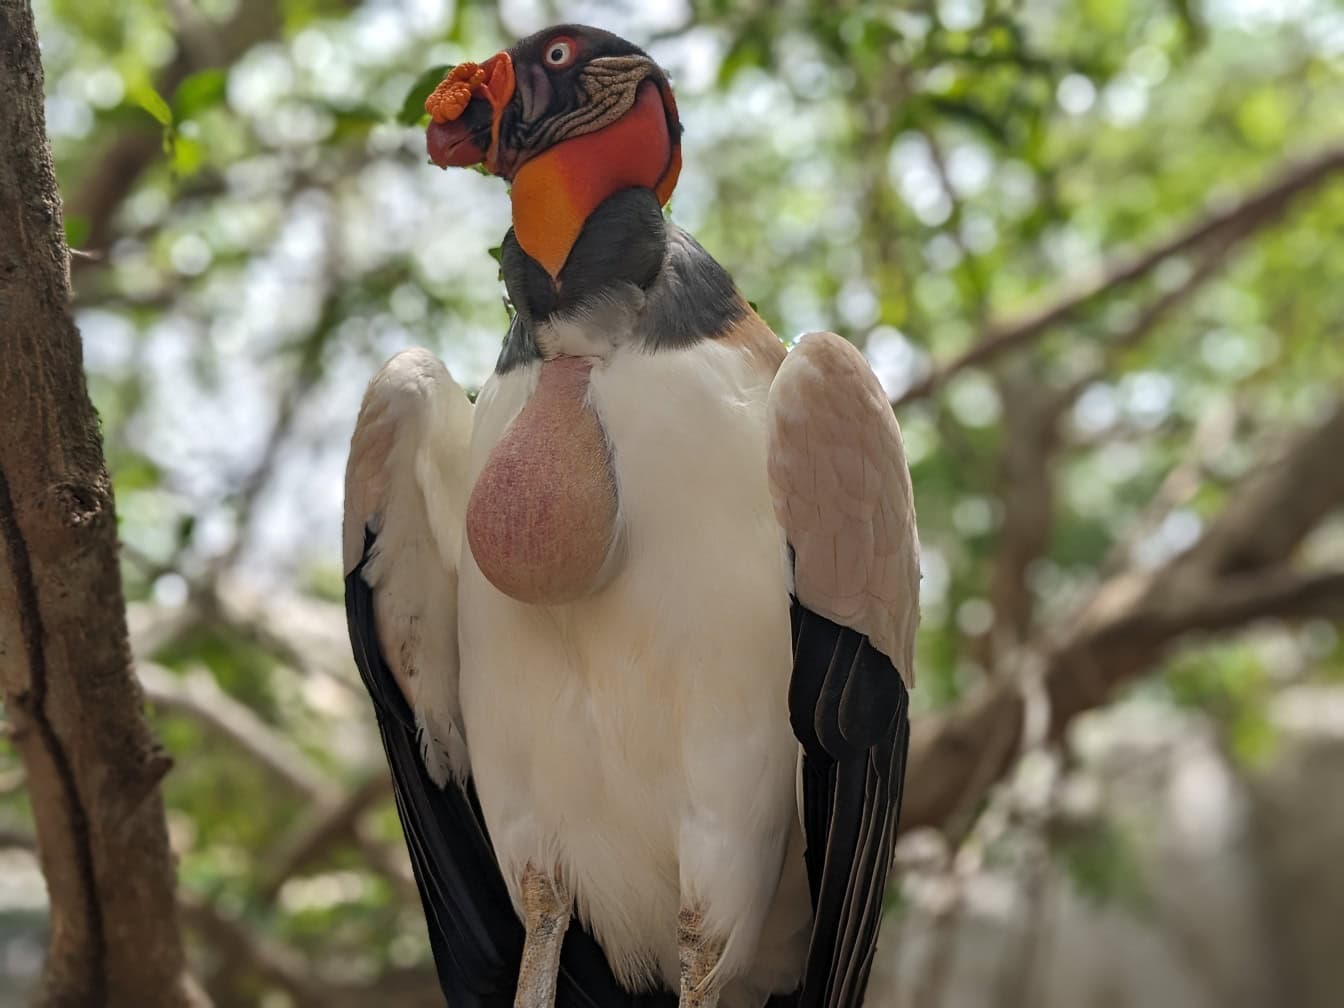 Vulturul rege (Sarcoramphus papa) o pasăre mare originară din America Centrală și de Sud, stând pe o ramură de copac